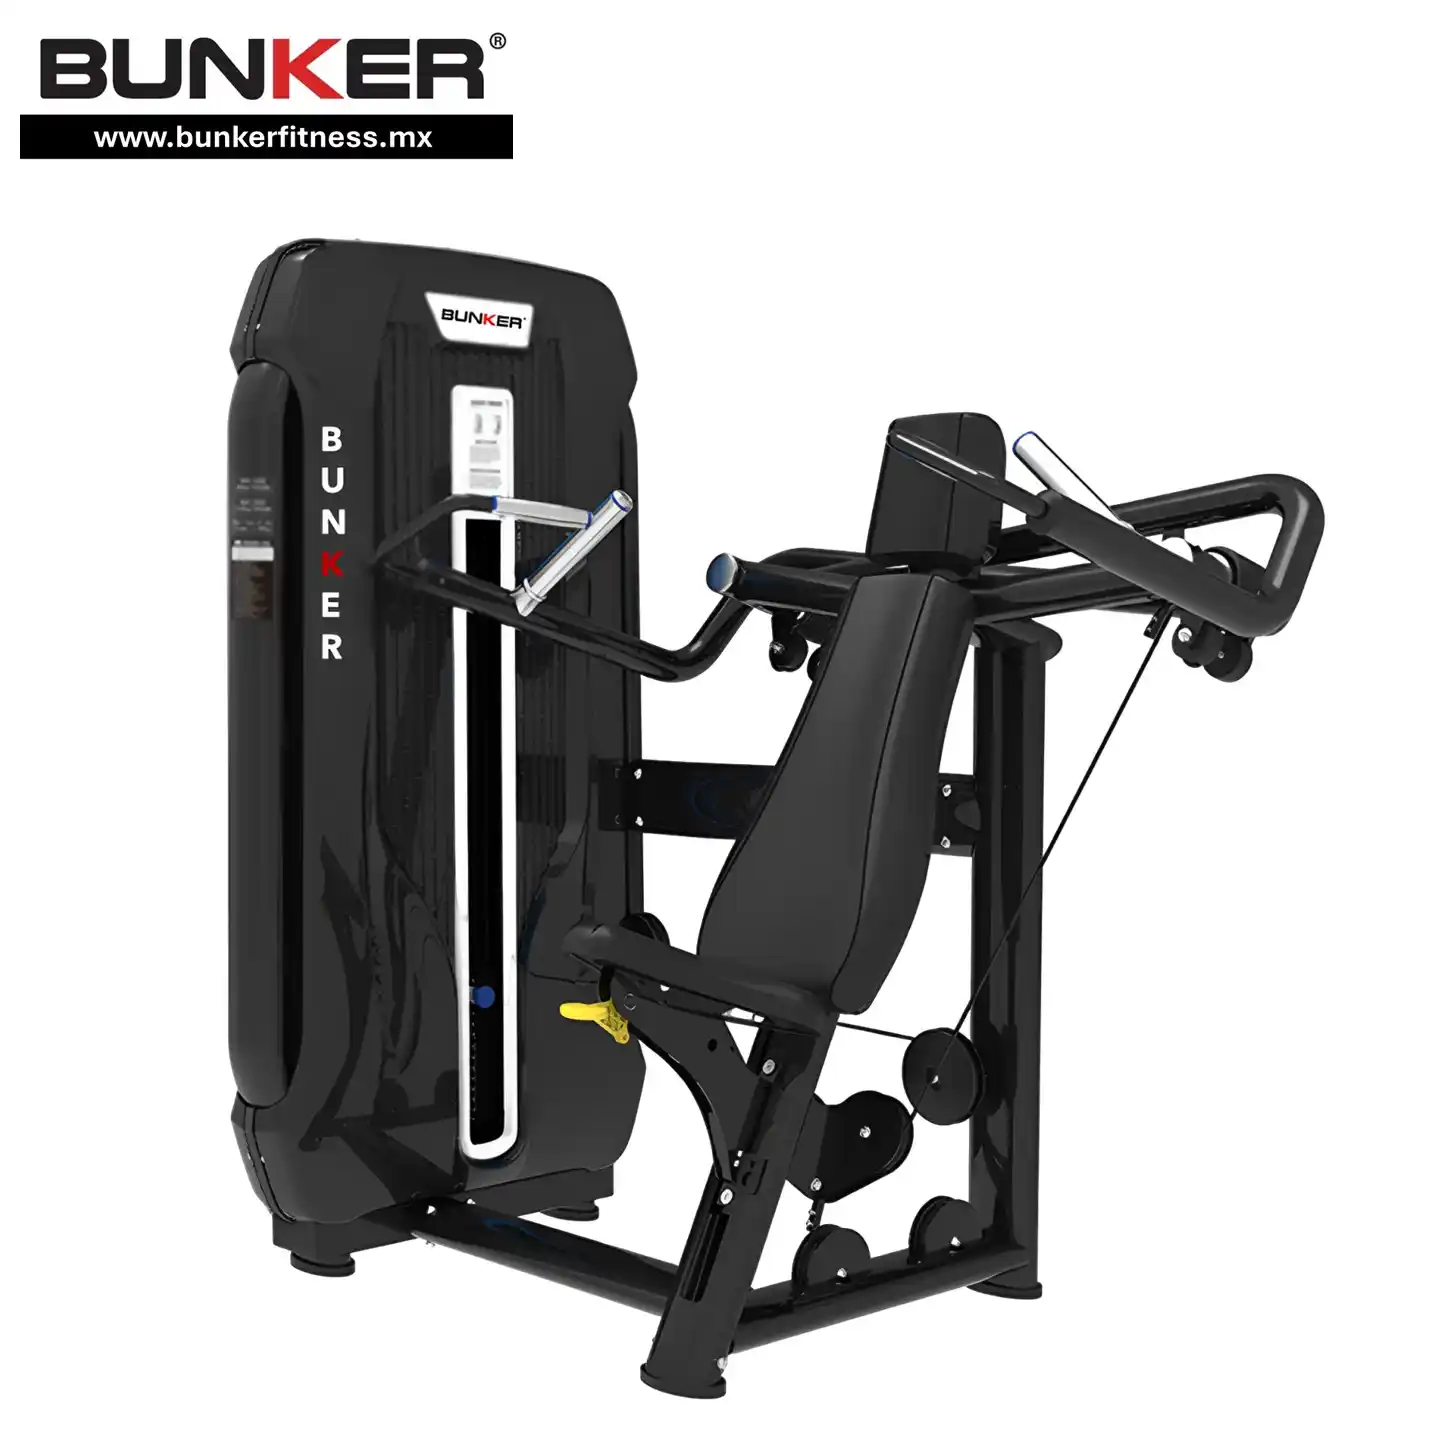 prensa de hombro bunker fitness para ejercicio en gym y gimnasio en casa bunker gym bunker fitness